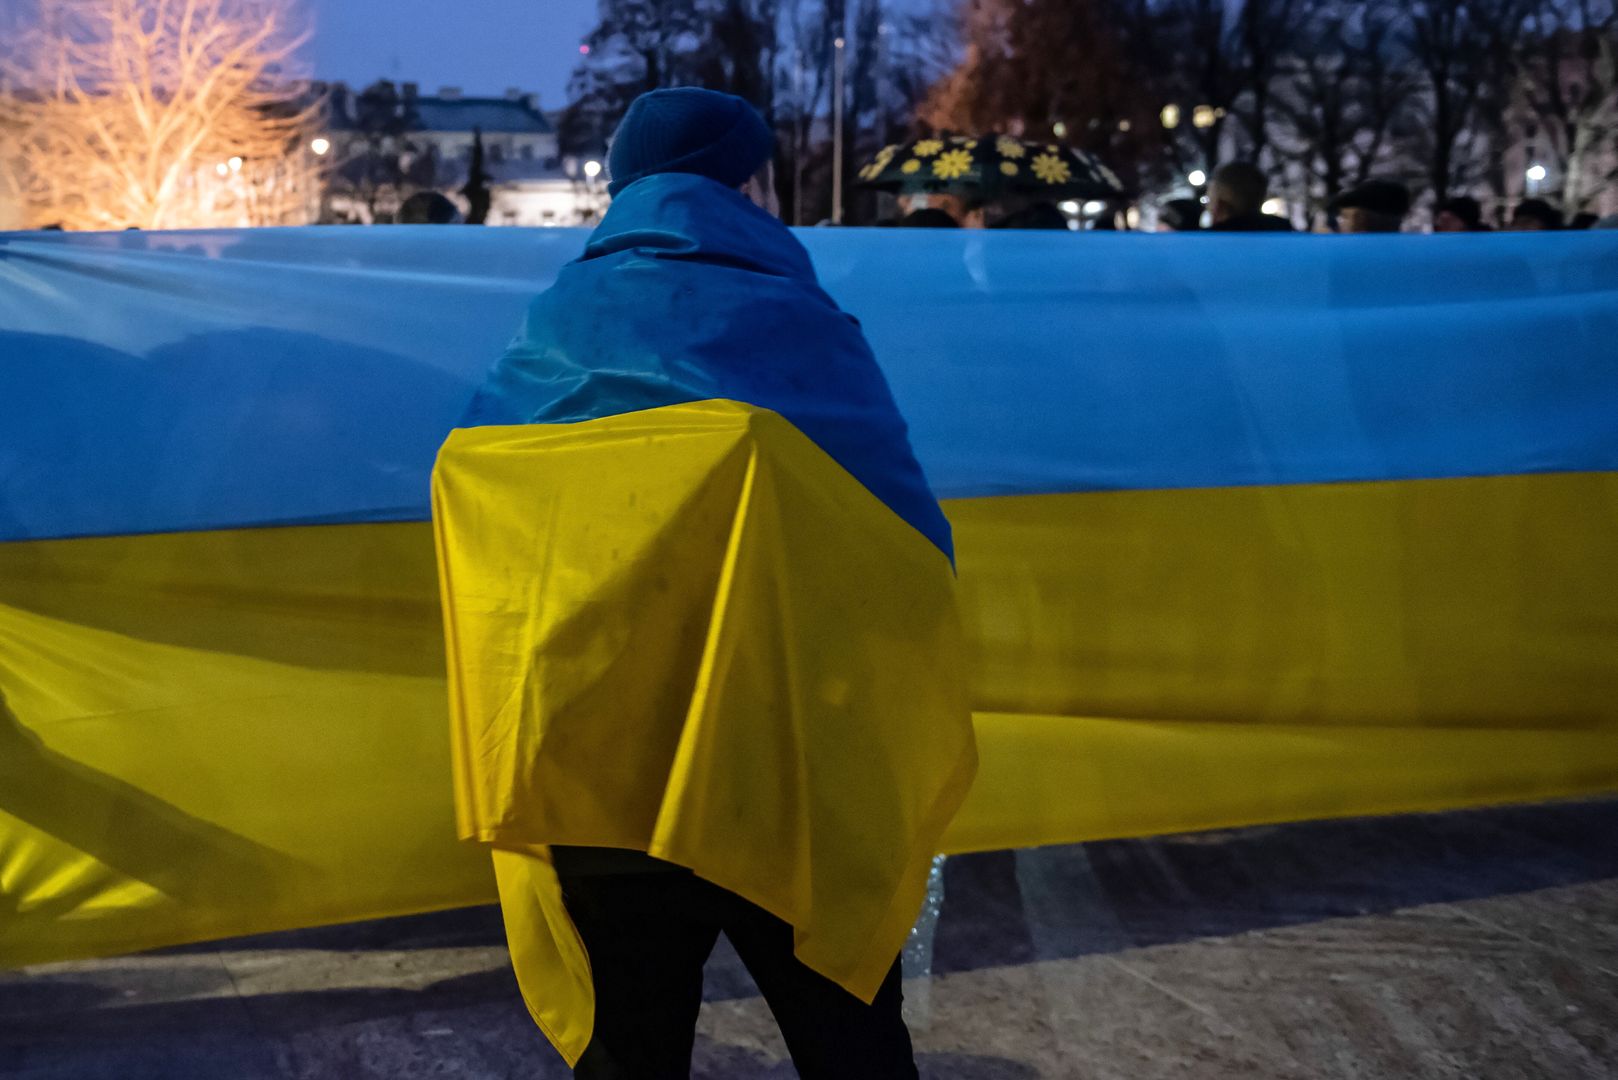 Ukraina wprowadza stan wyjątkowy. Broń dostępna dla każdego